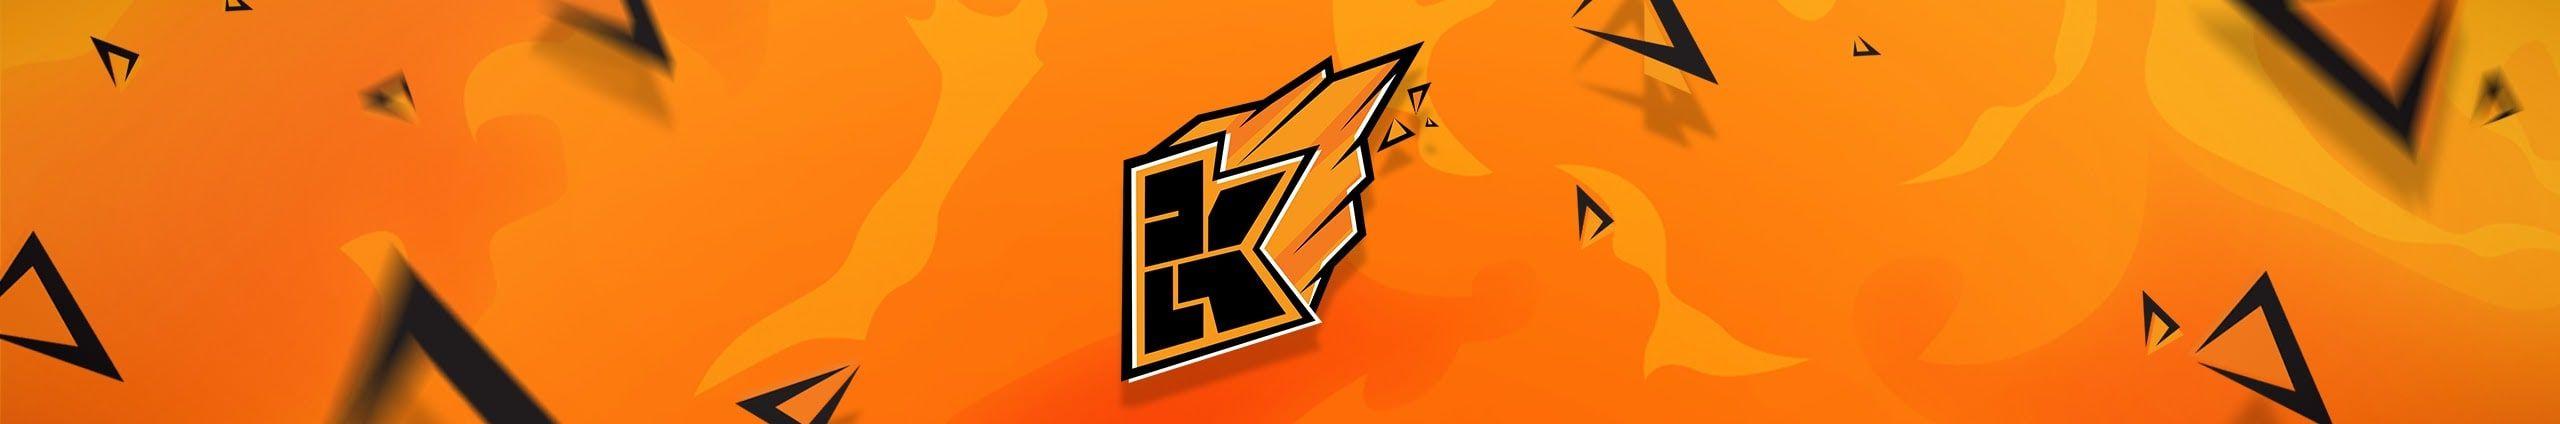 Kwebblekop Logo - image Of Jelly Logo And Kwebbelkop Logo #rock Cafe